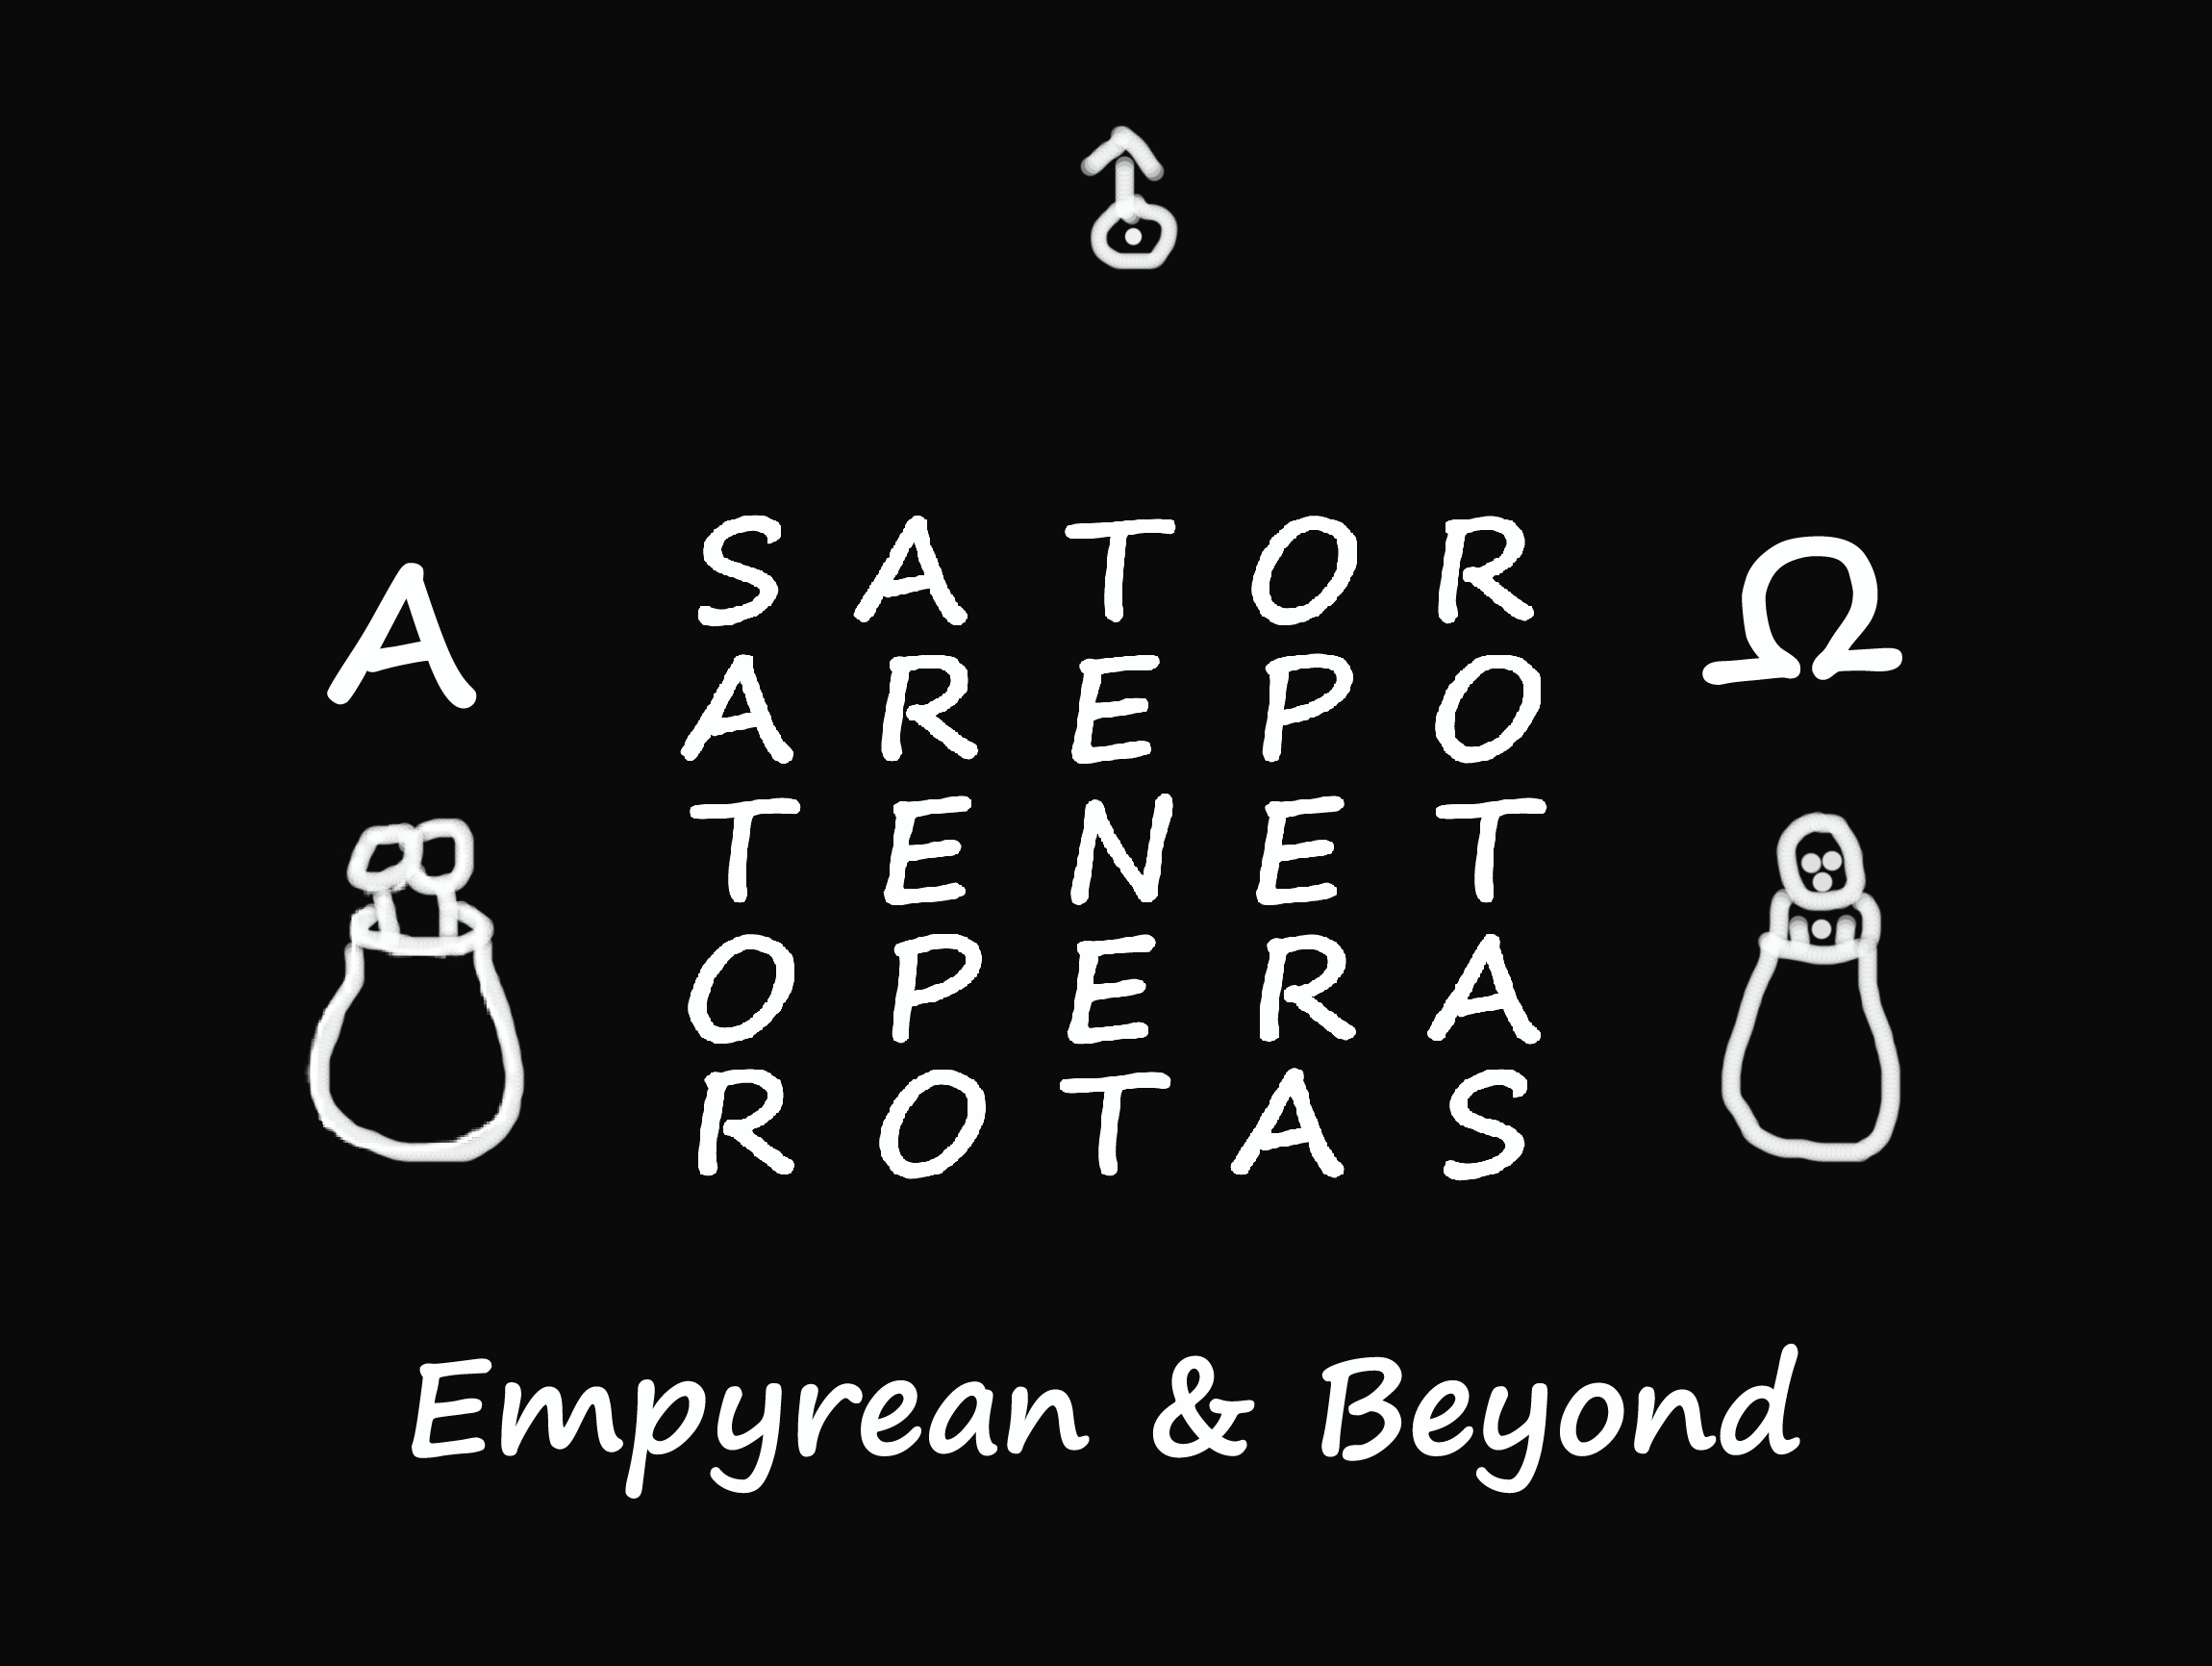 Genuflect by Tracy R. Twyman: Empyrean & Beyond: S A T O R